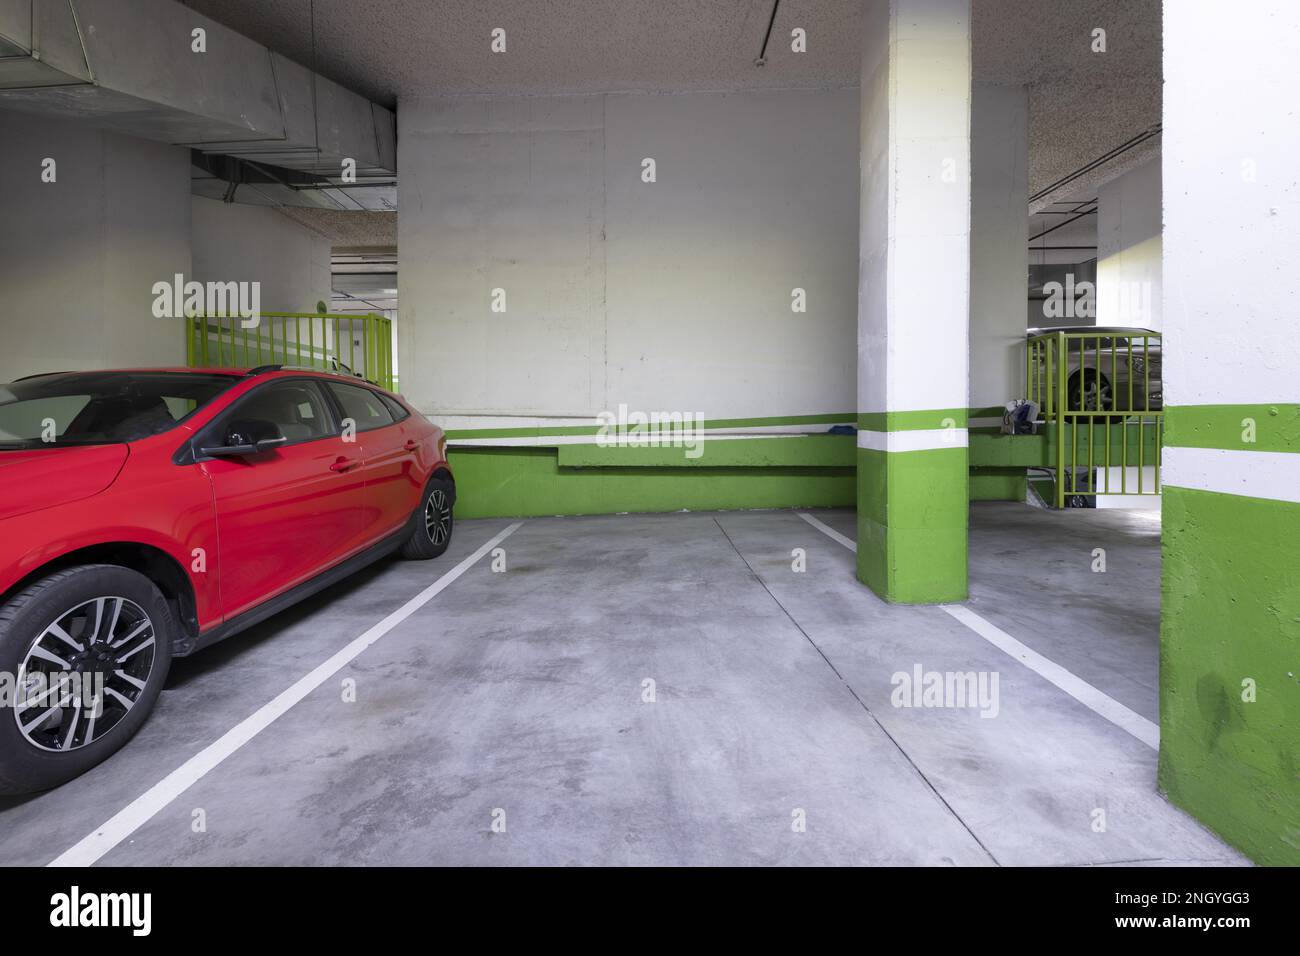 Piano terra di un edificio con garage e veicoli parcheggiati Foto Stock